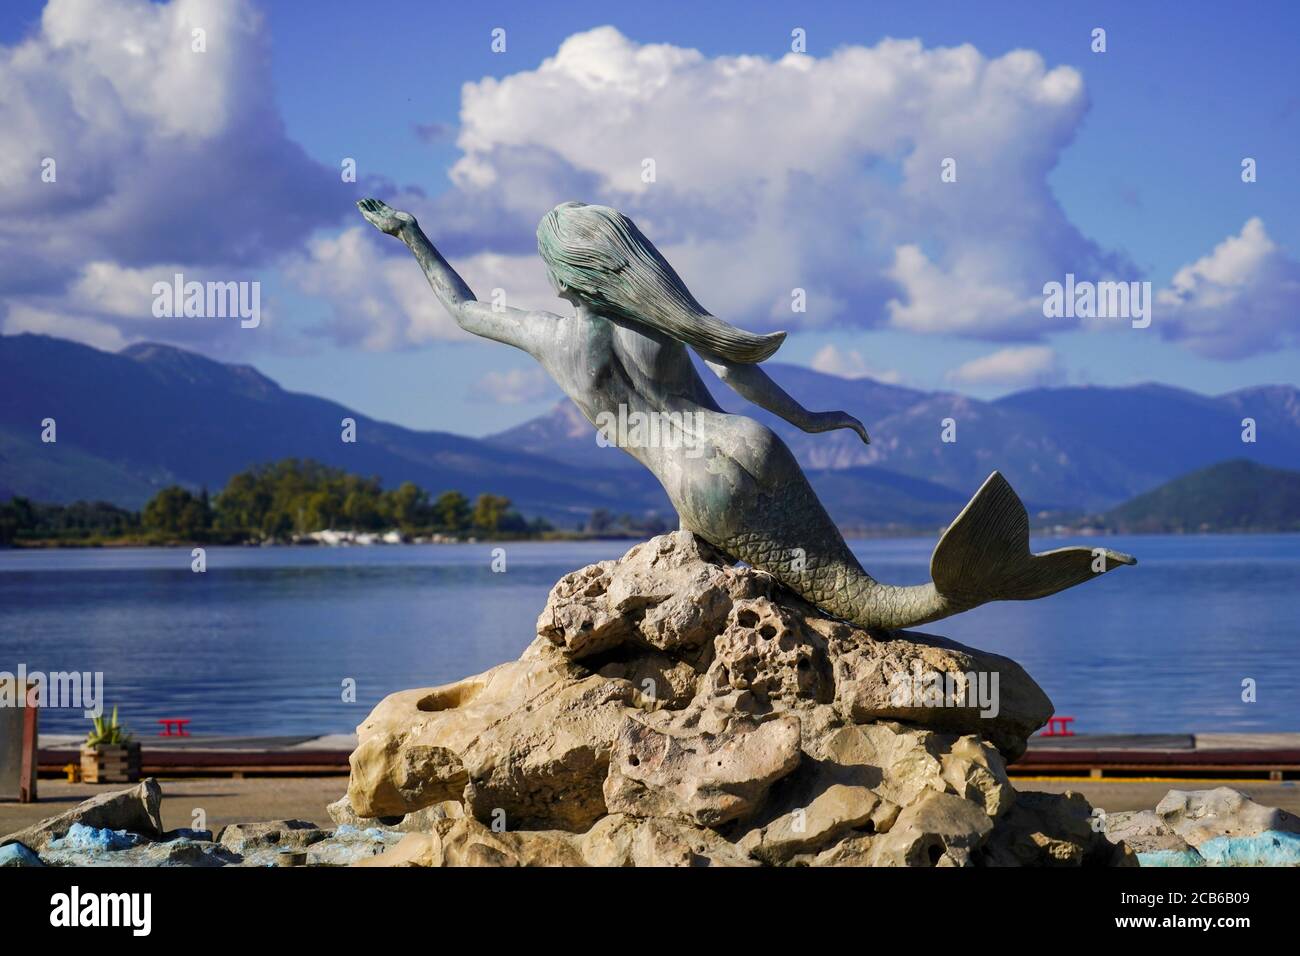 Mermaid Statue und Wasserbrunnen an der Uferpromenade von Poros Town, Griechenland. Poros ist ein kleines griechisches Inselpaar im südlichen Teil des Saronischen Golfs Stockfoto